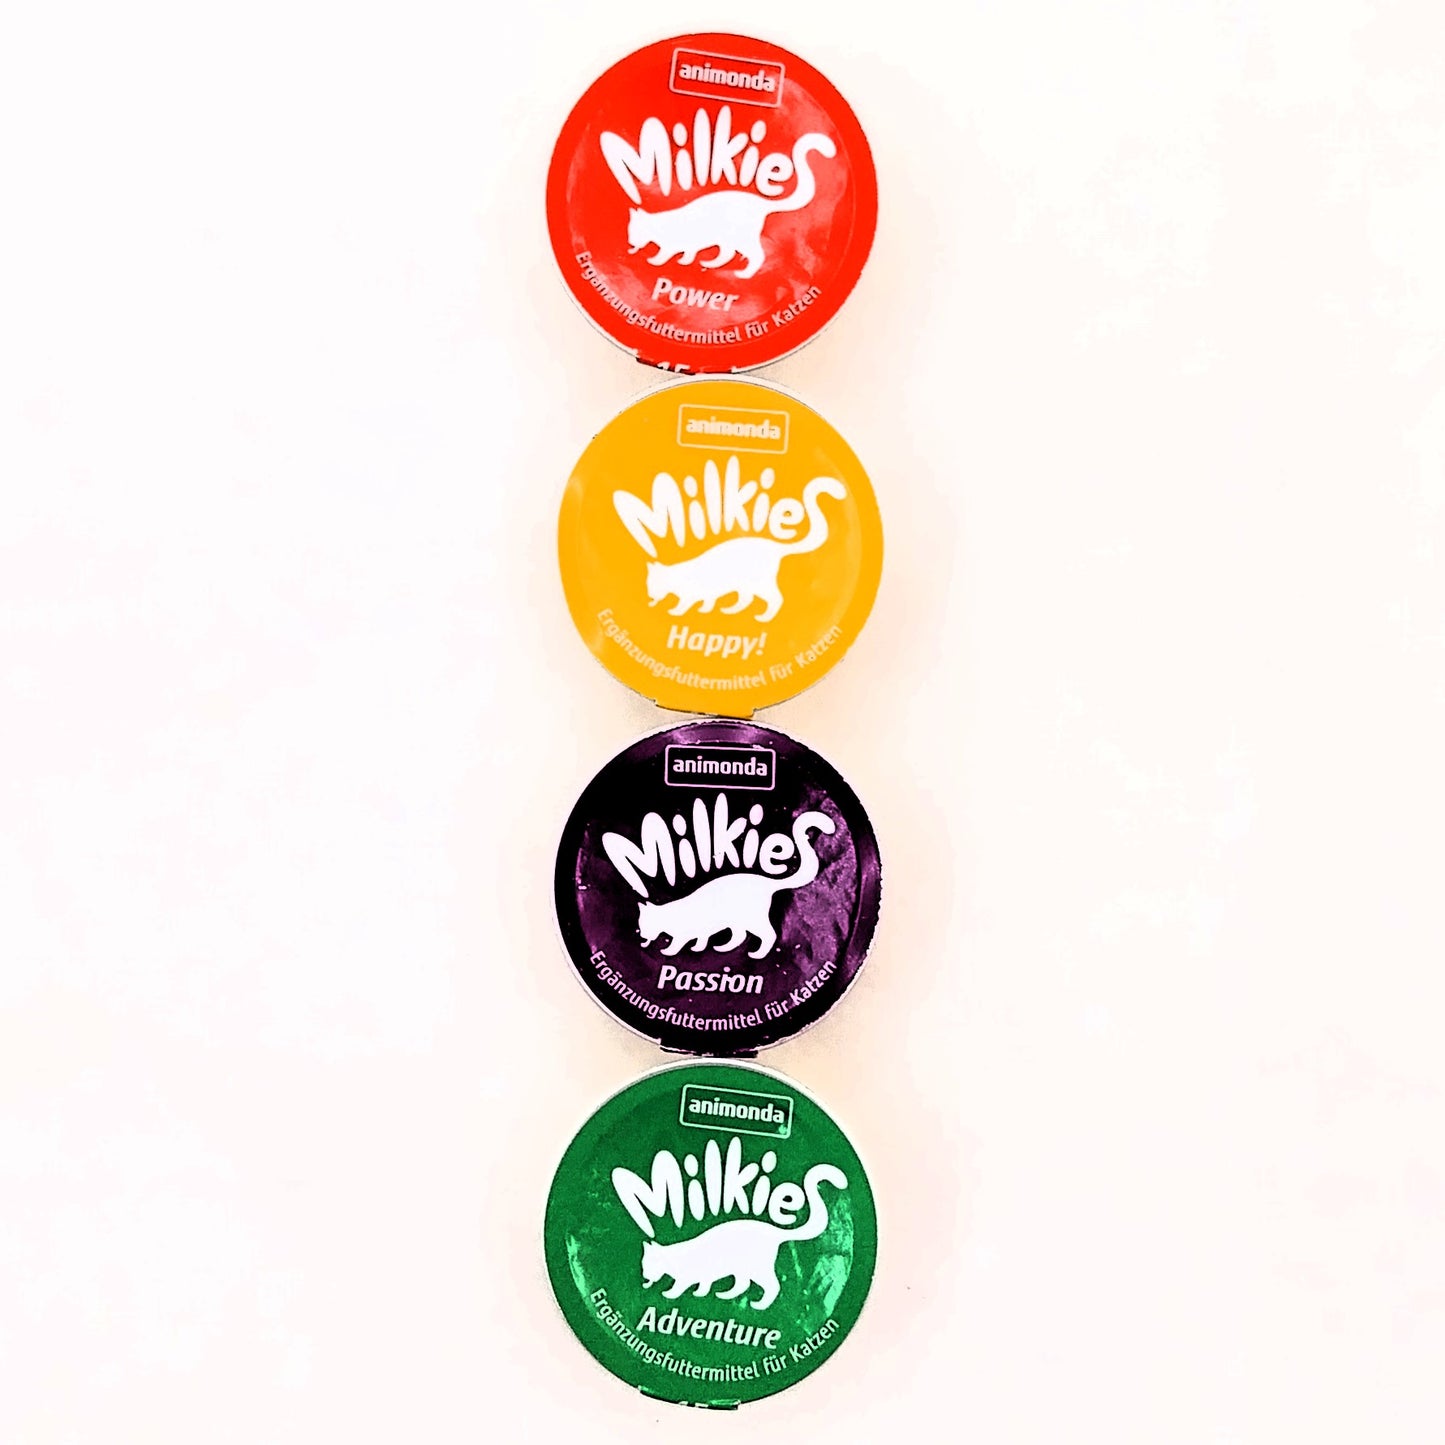 Animonda Milkies Cat Snack 20er Vorteilspack, 4 Variationen 20 x 15g